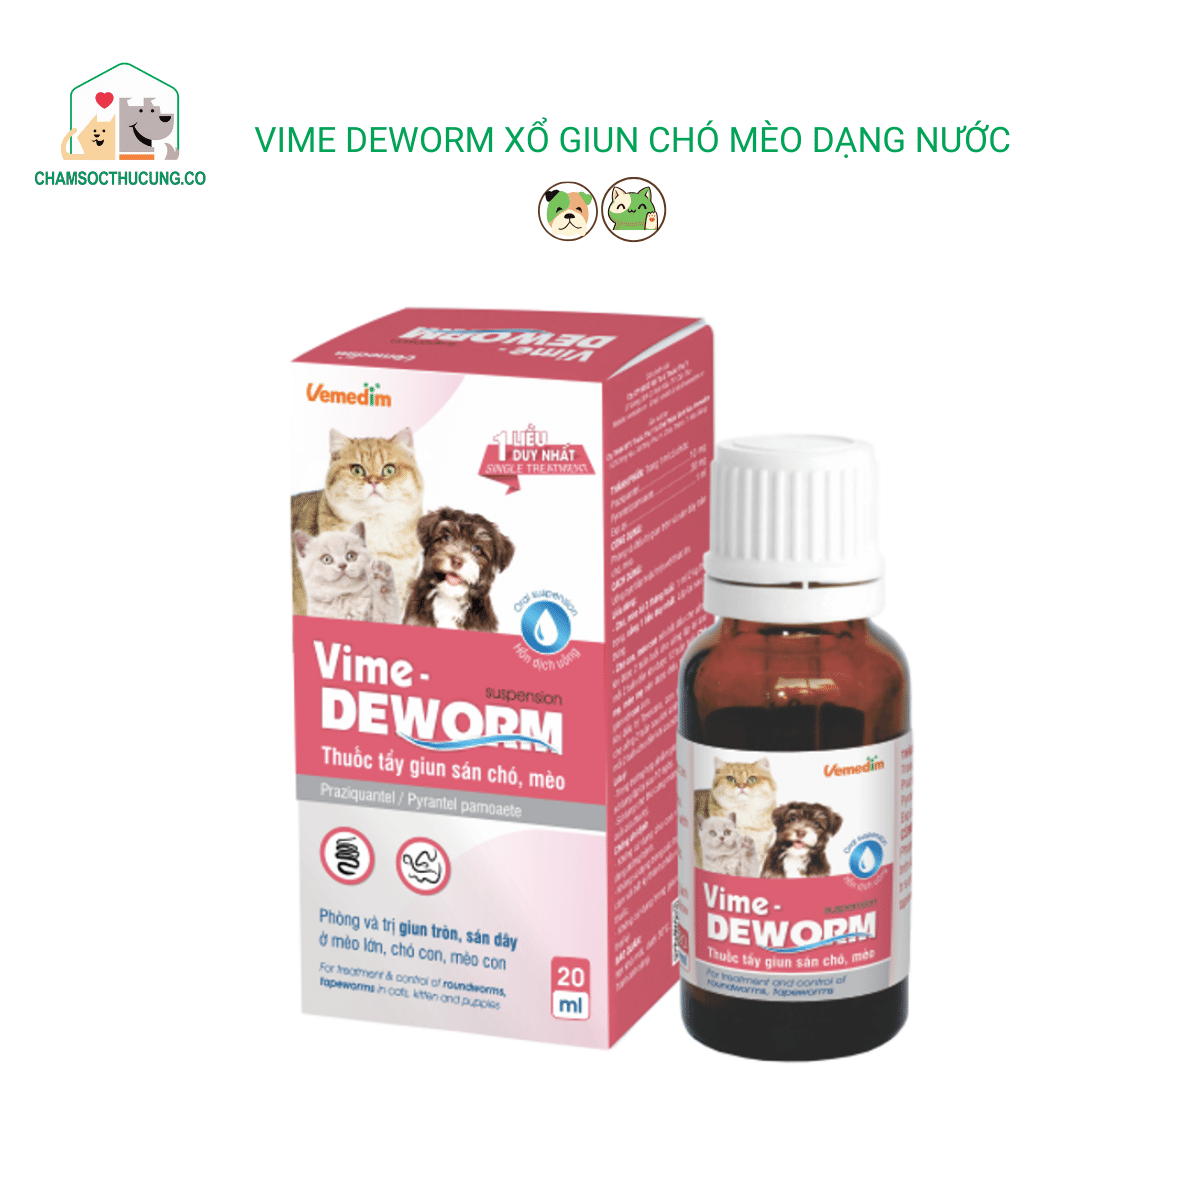  Vime-deworm - Tẩy Giun Sán Chó Mèo Dạng Nước- Vemedim-20ml 